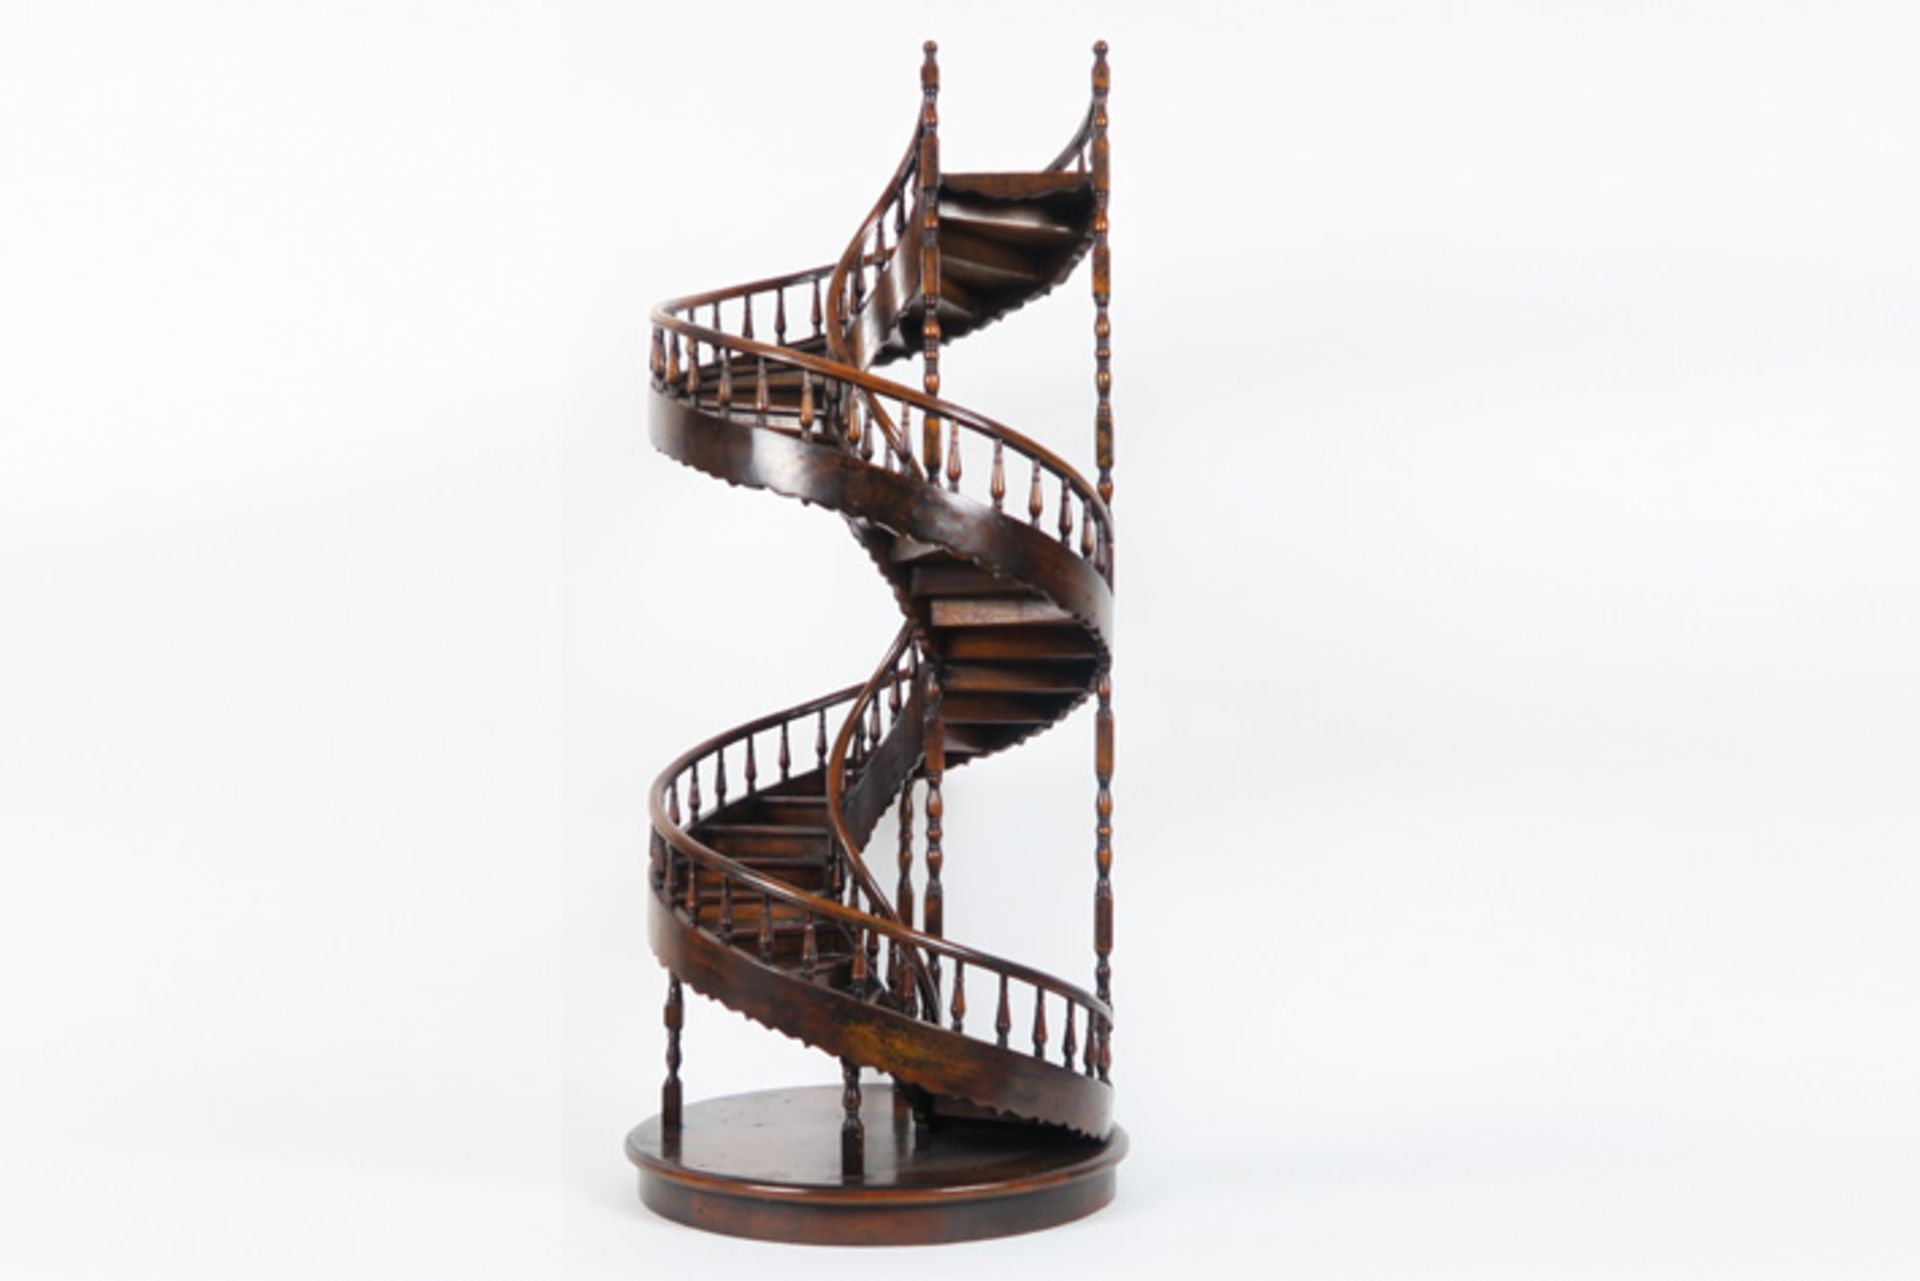 sort of a master's piece : antique miniature stairs in wood Antiek soort meestermeubel : houten